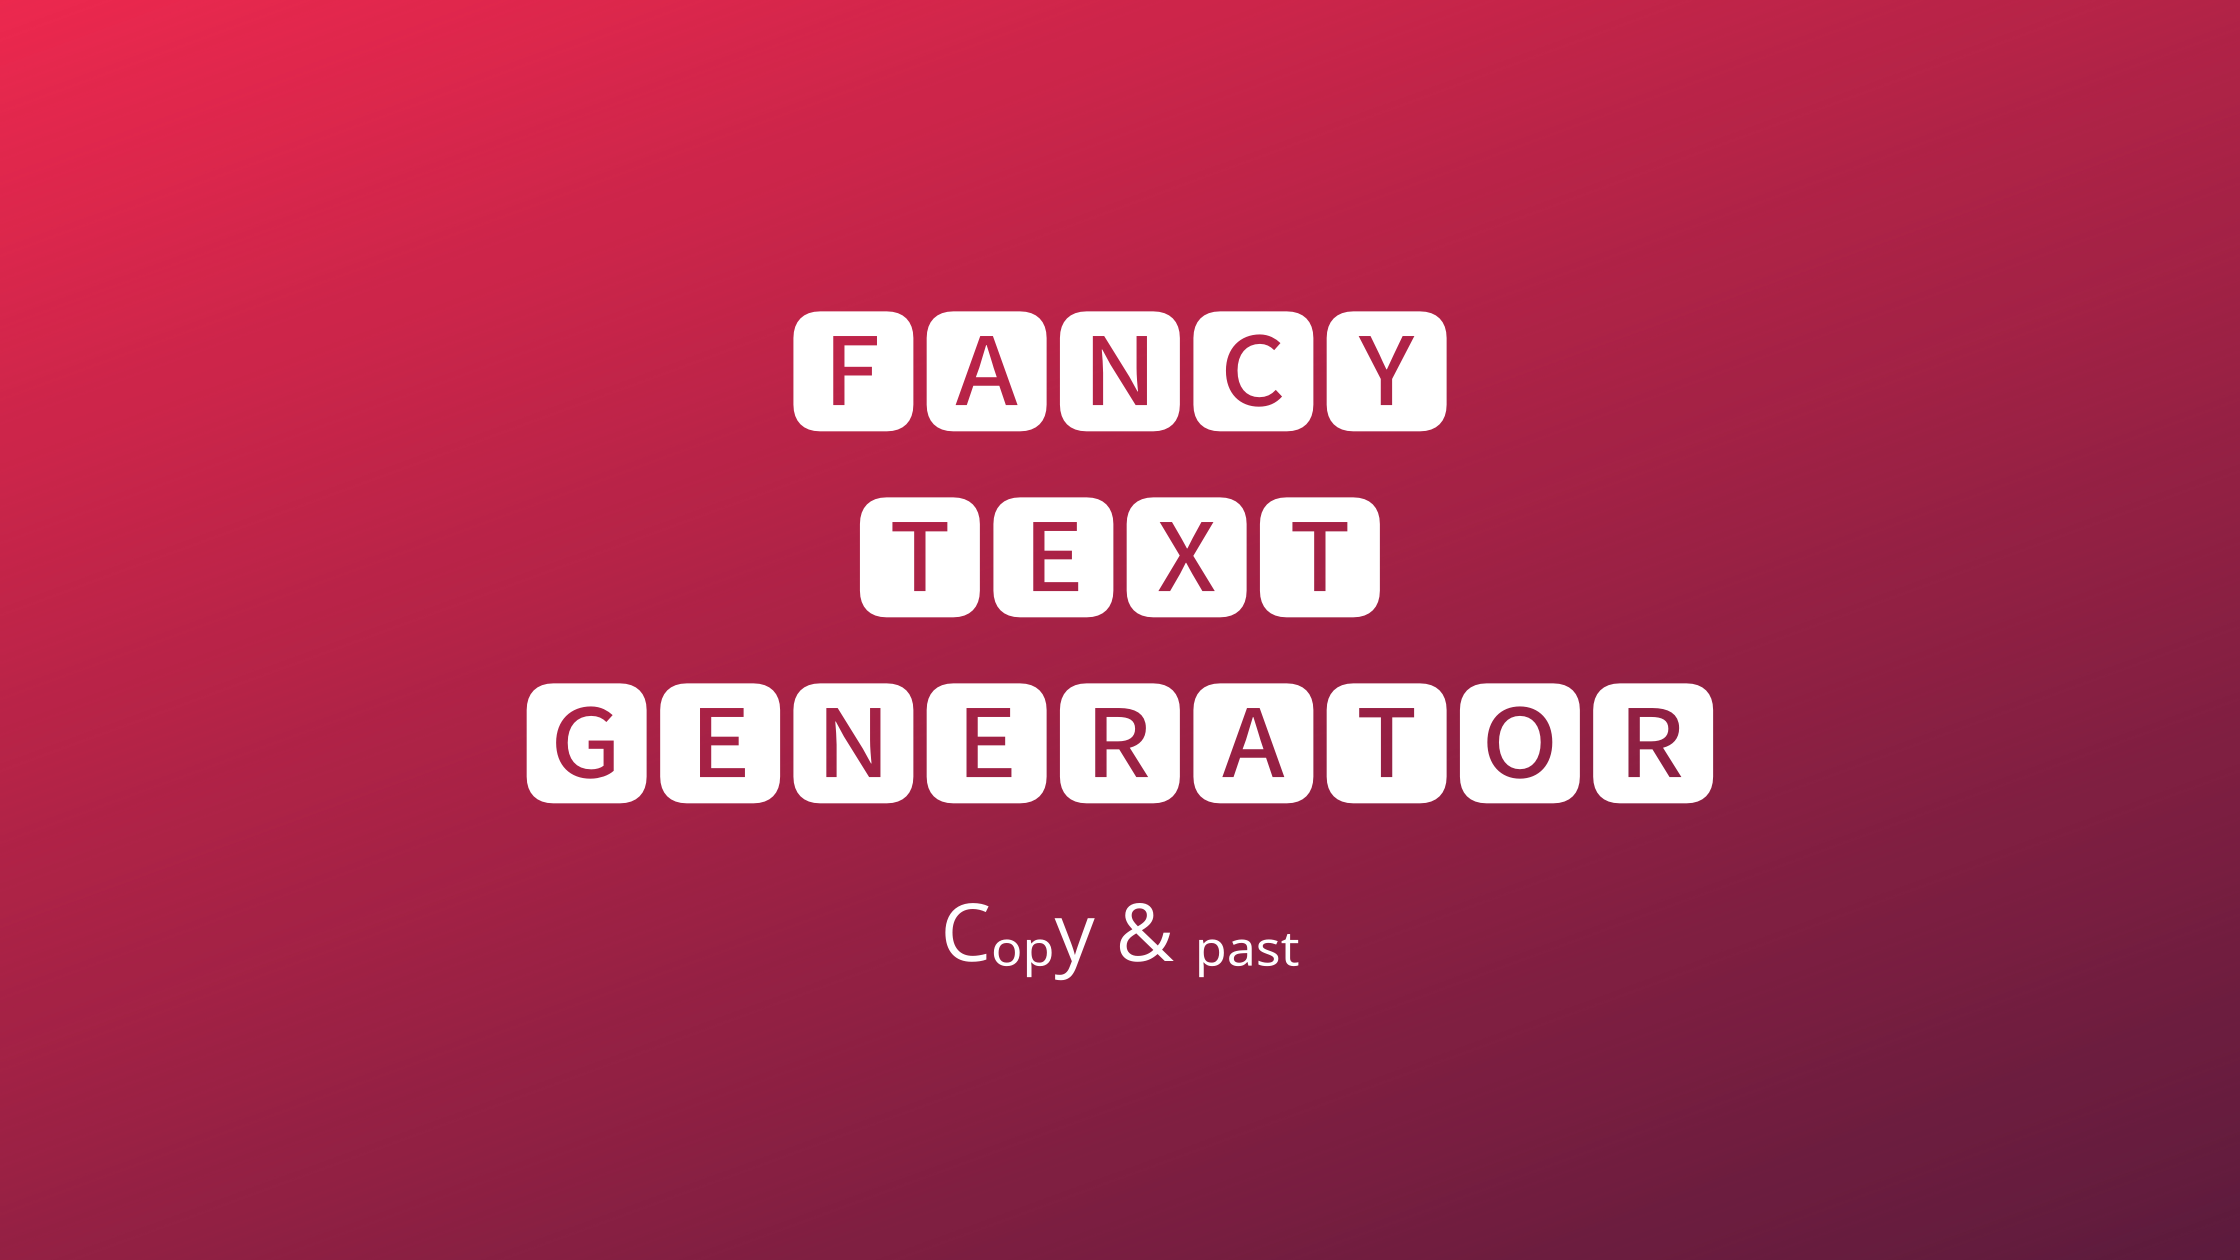 Kiểu chữ Fancy Text miễn phí trực tuyến: Tạo ấn tượng đầu tiên với tiêu đề tuyệt đẹp của bạn bằng kiểu chữ Fancy Text miễn phí trực tuyến. Với nhiều kiểu chữ sáng tạo và đa dạng, bạn có thể tạo ra những tiêu đề thu hút người xem chỉ trong một vài giây. Hãy truy cập ngay và trải nghiệm!